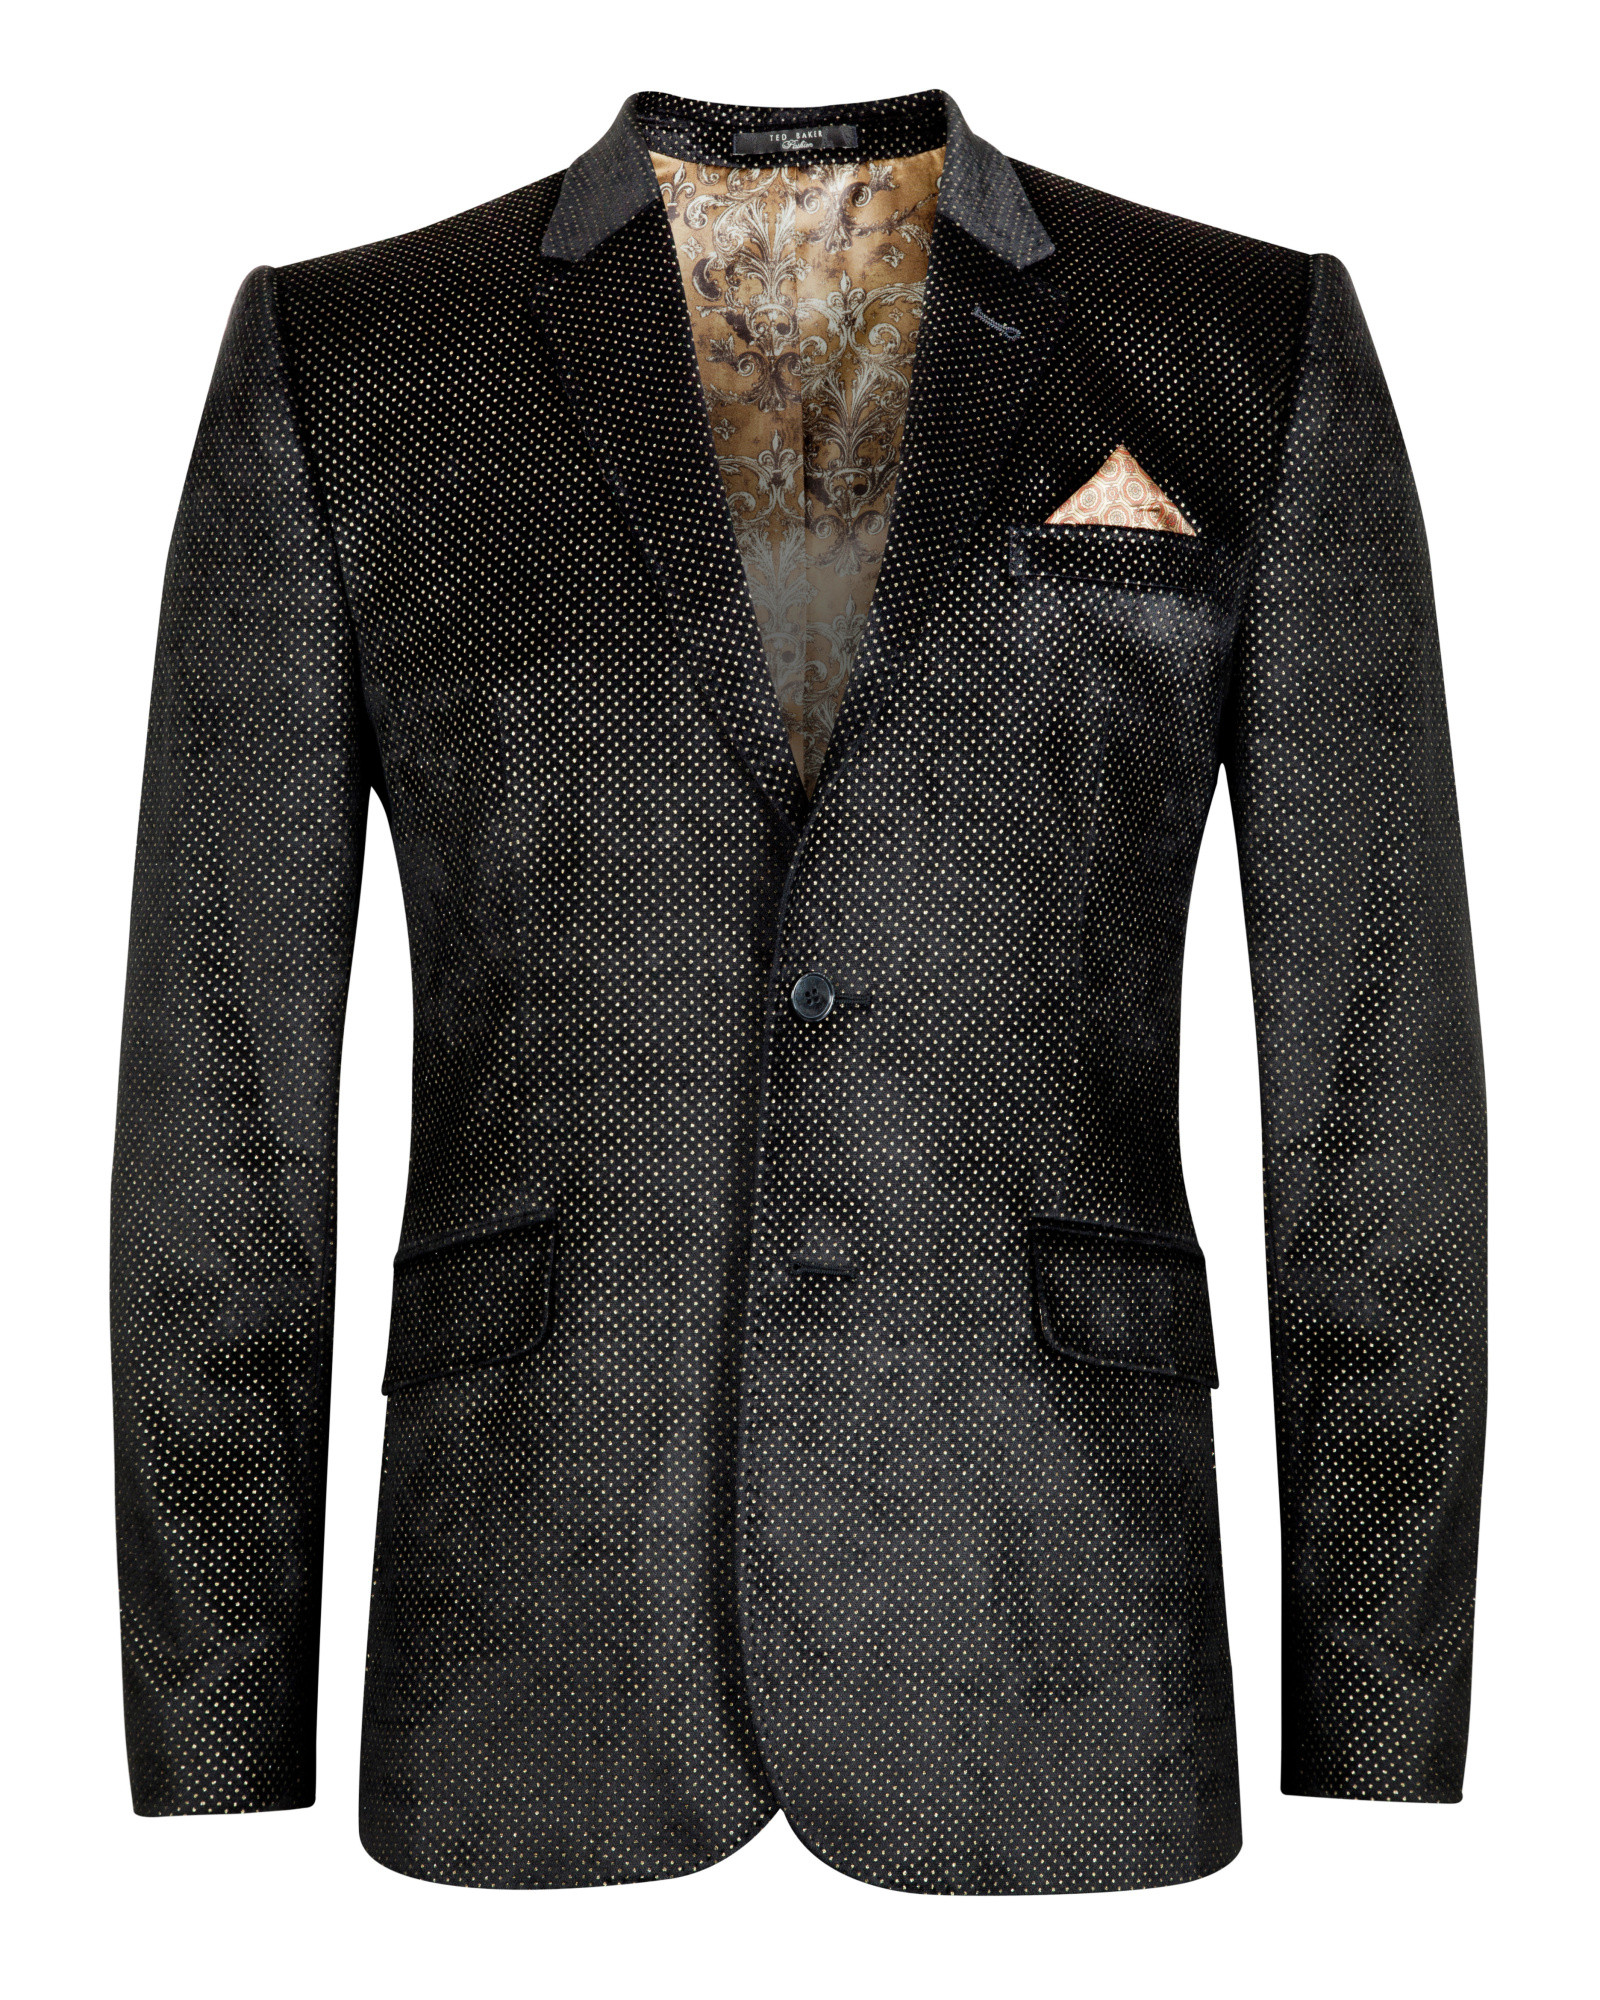 Ted Baker Patterned Velvet Tuxedo Jacket in Black for Men - Lyst